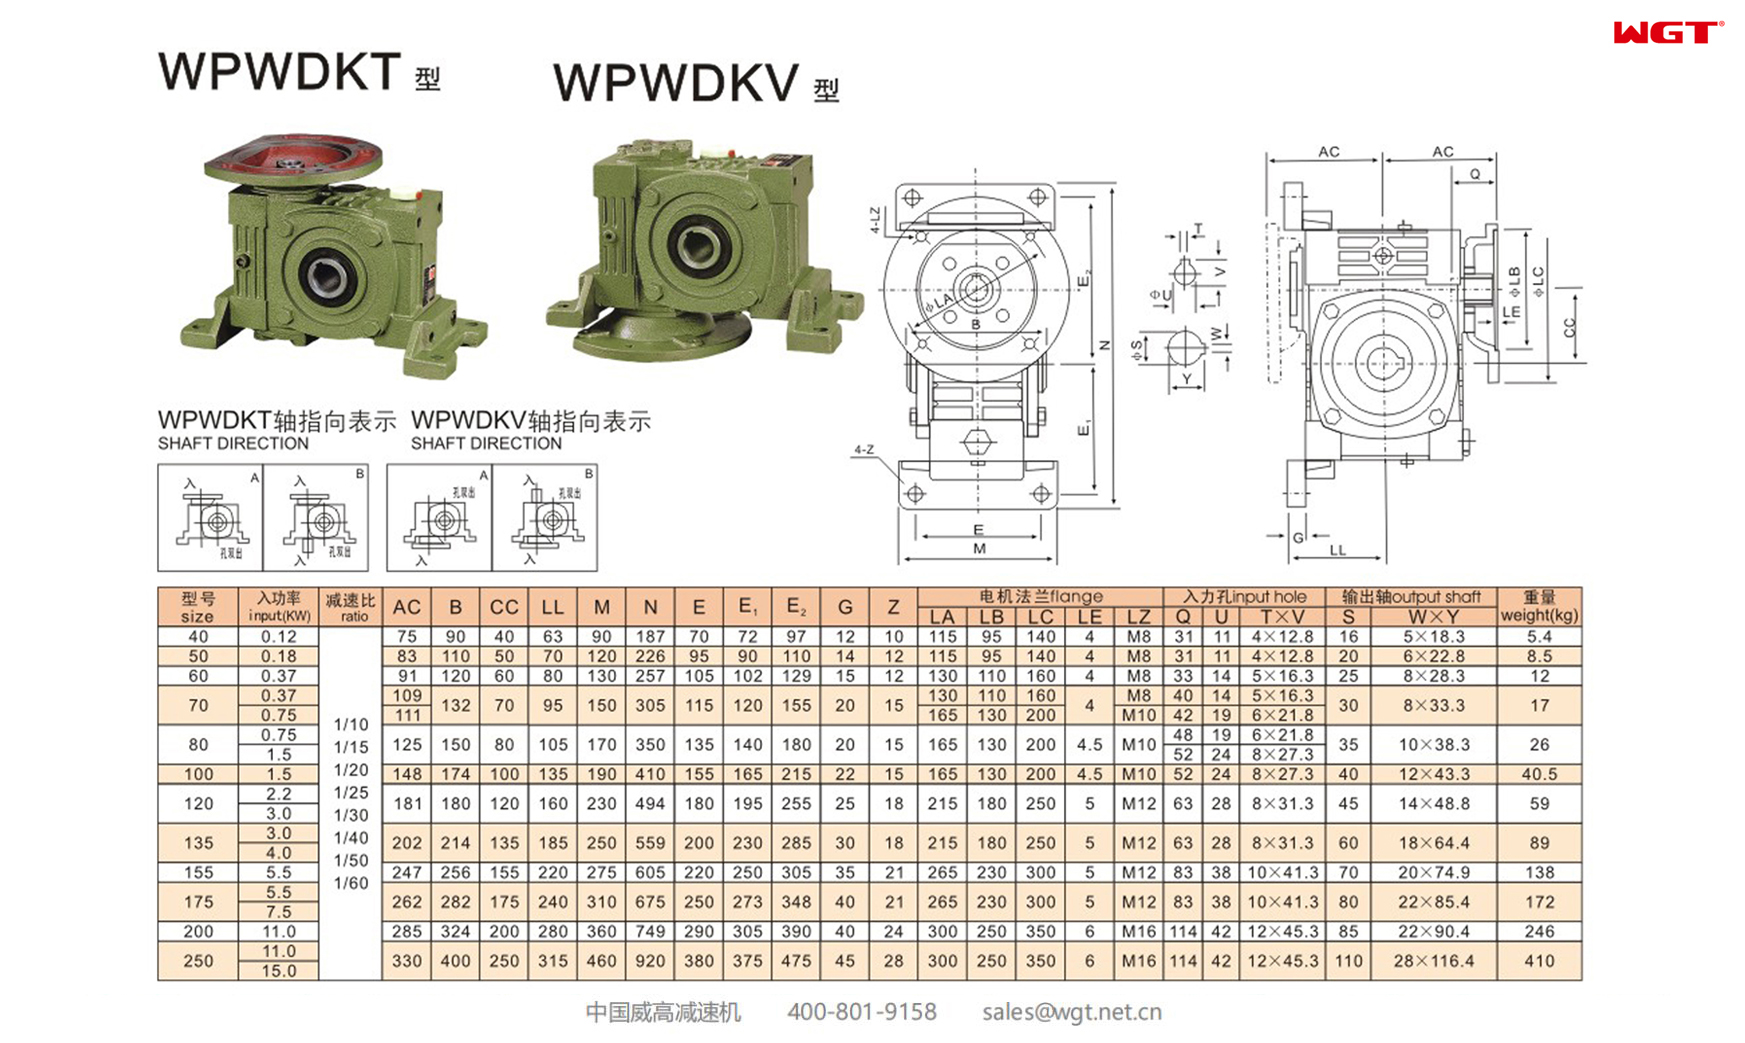 WPWDKT WPWDKV50 Worm Gear Reducer UNIVERSAL SPEED REDUCER